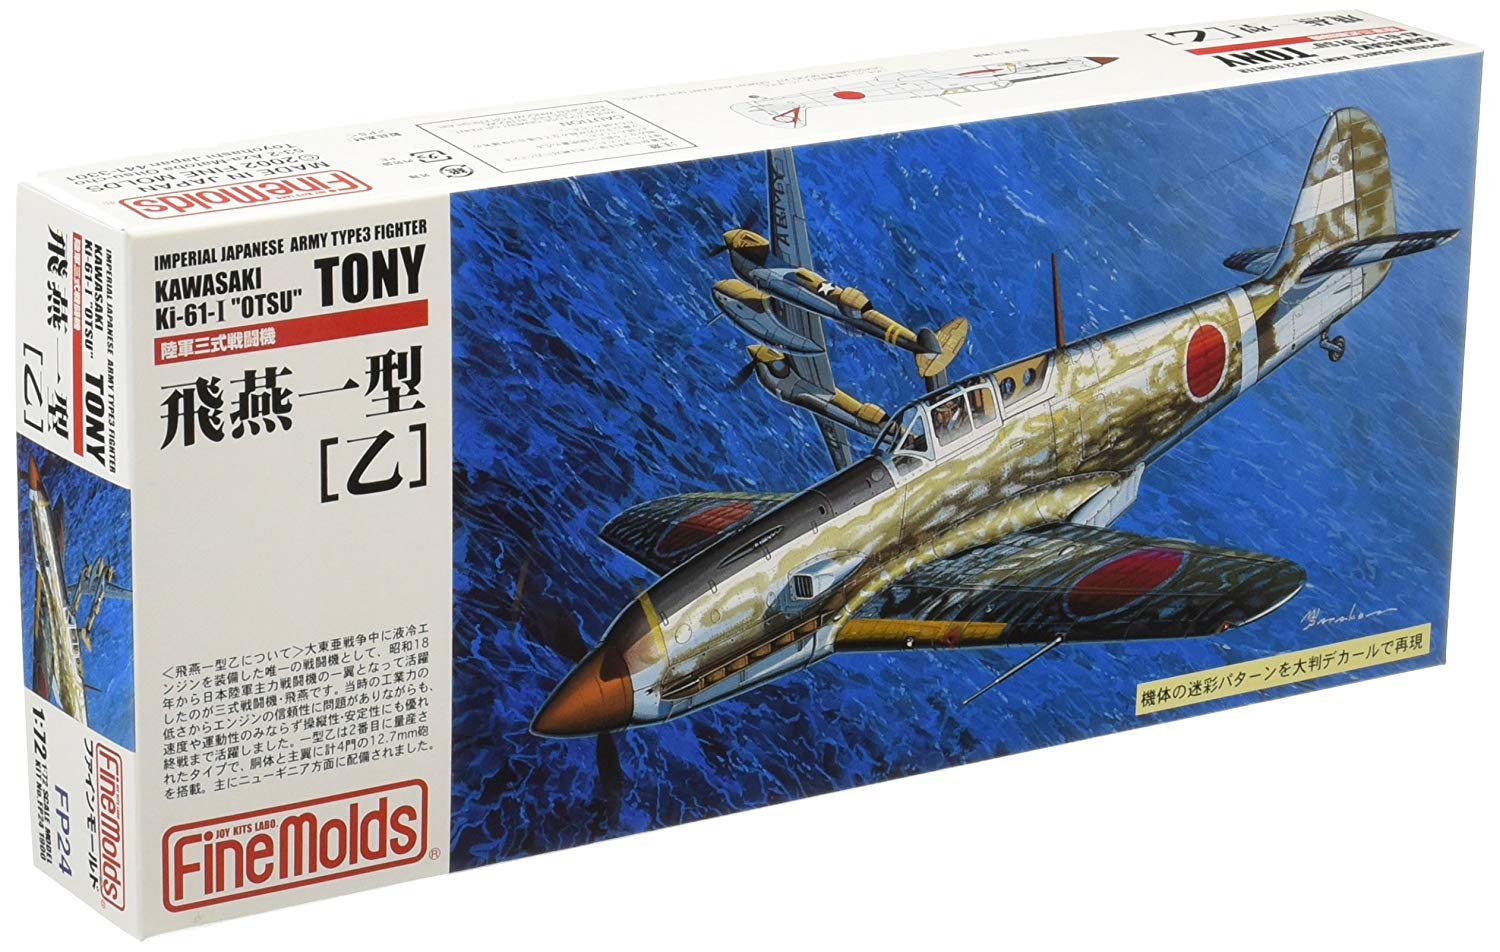 IJA Type3 Fighter Kawasaki Ki-61-I `Otsu` Tony